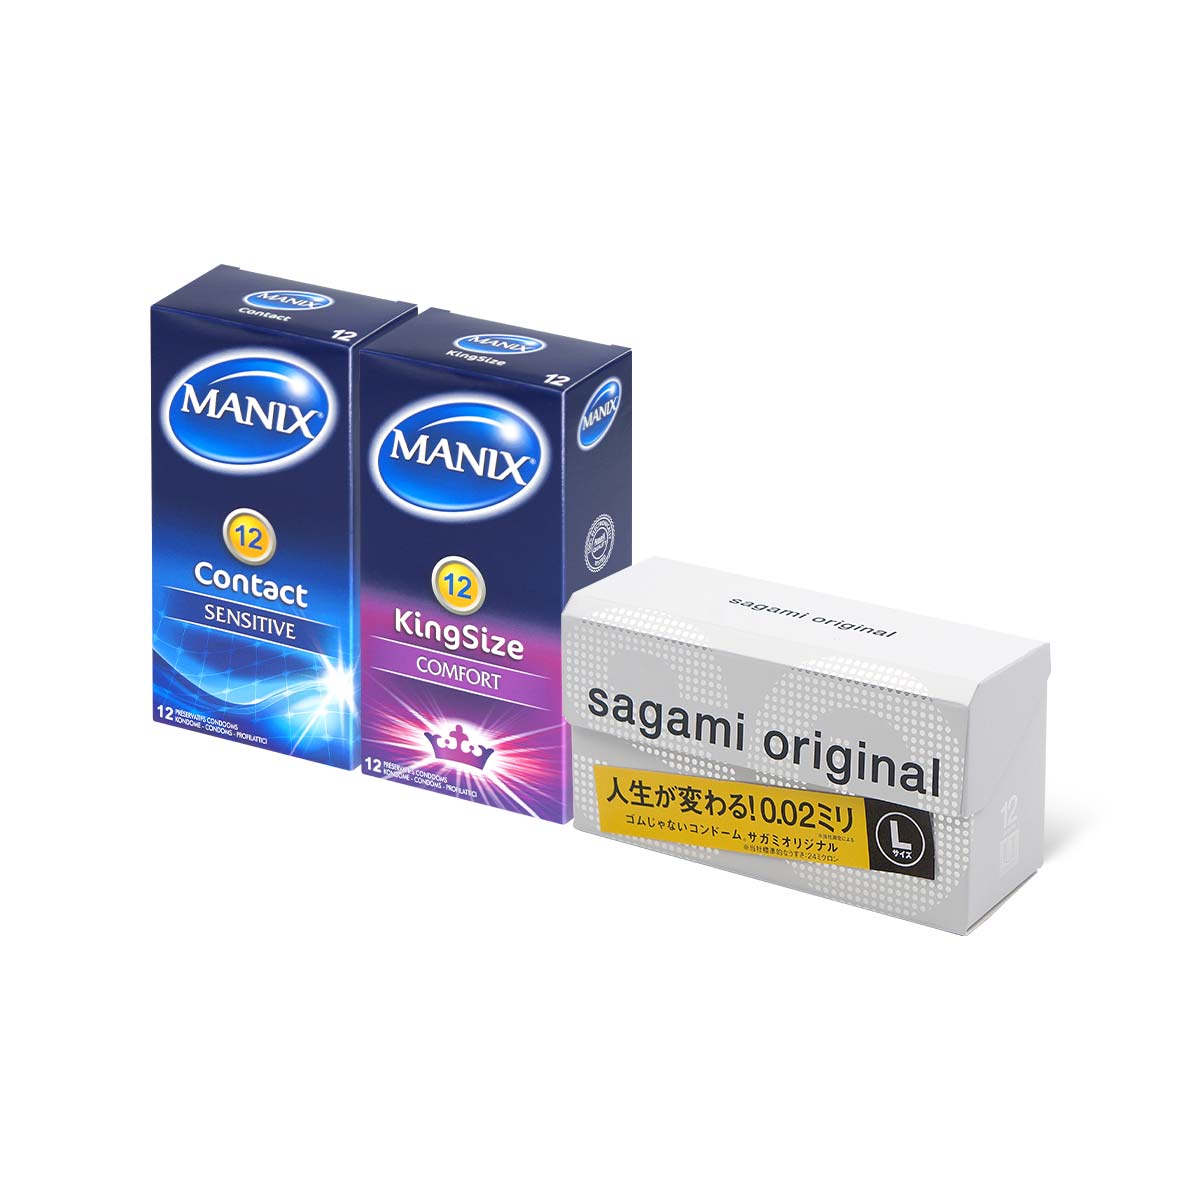 Sagami 0.02 x Manix Combo Set 36 pieces condom-p_1